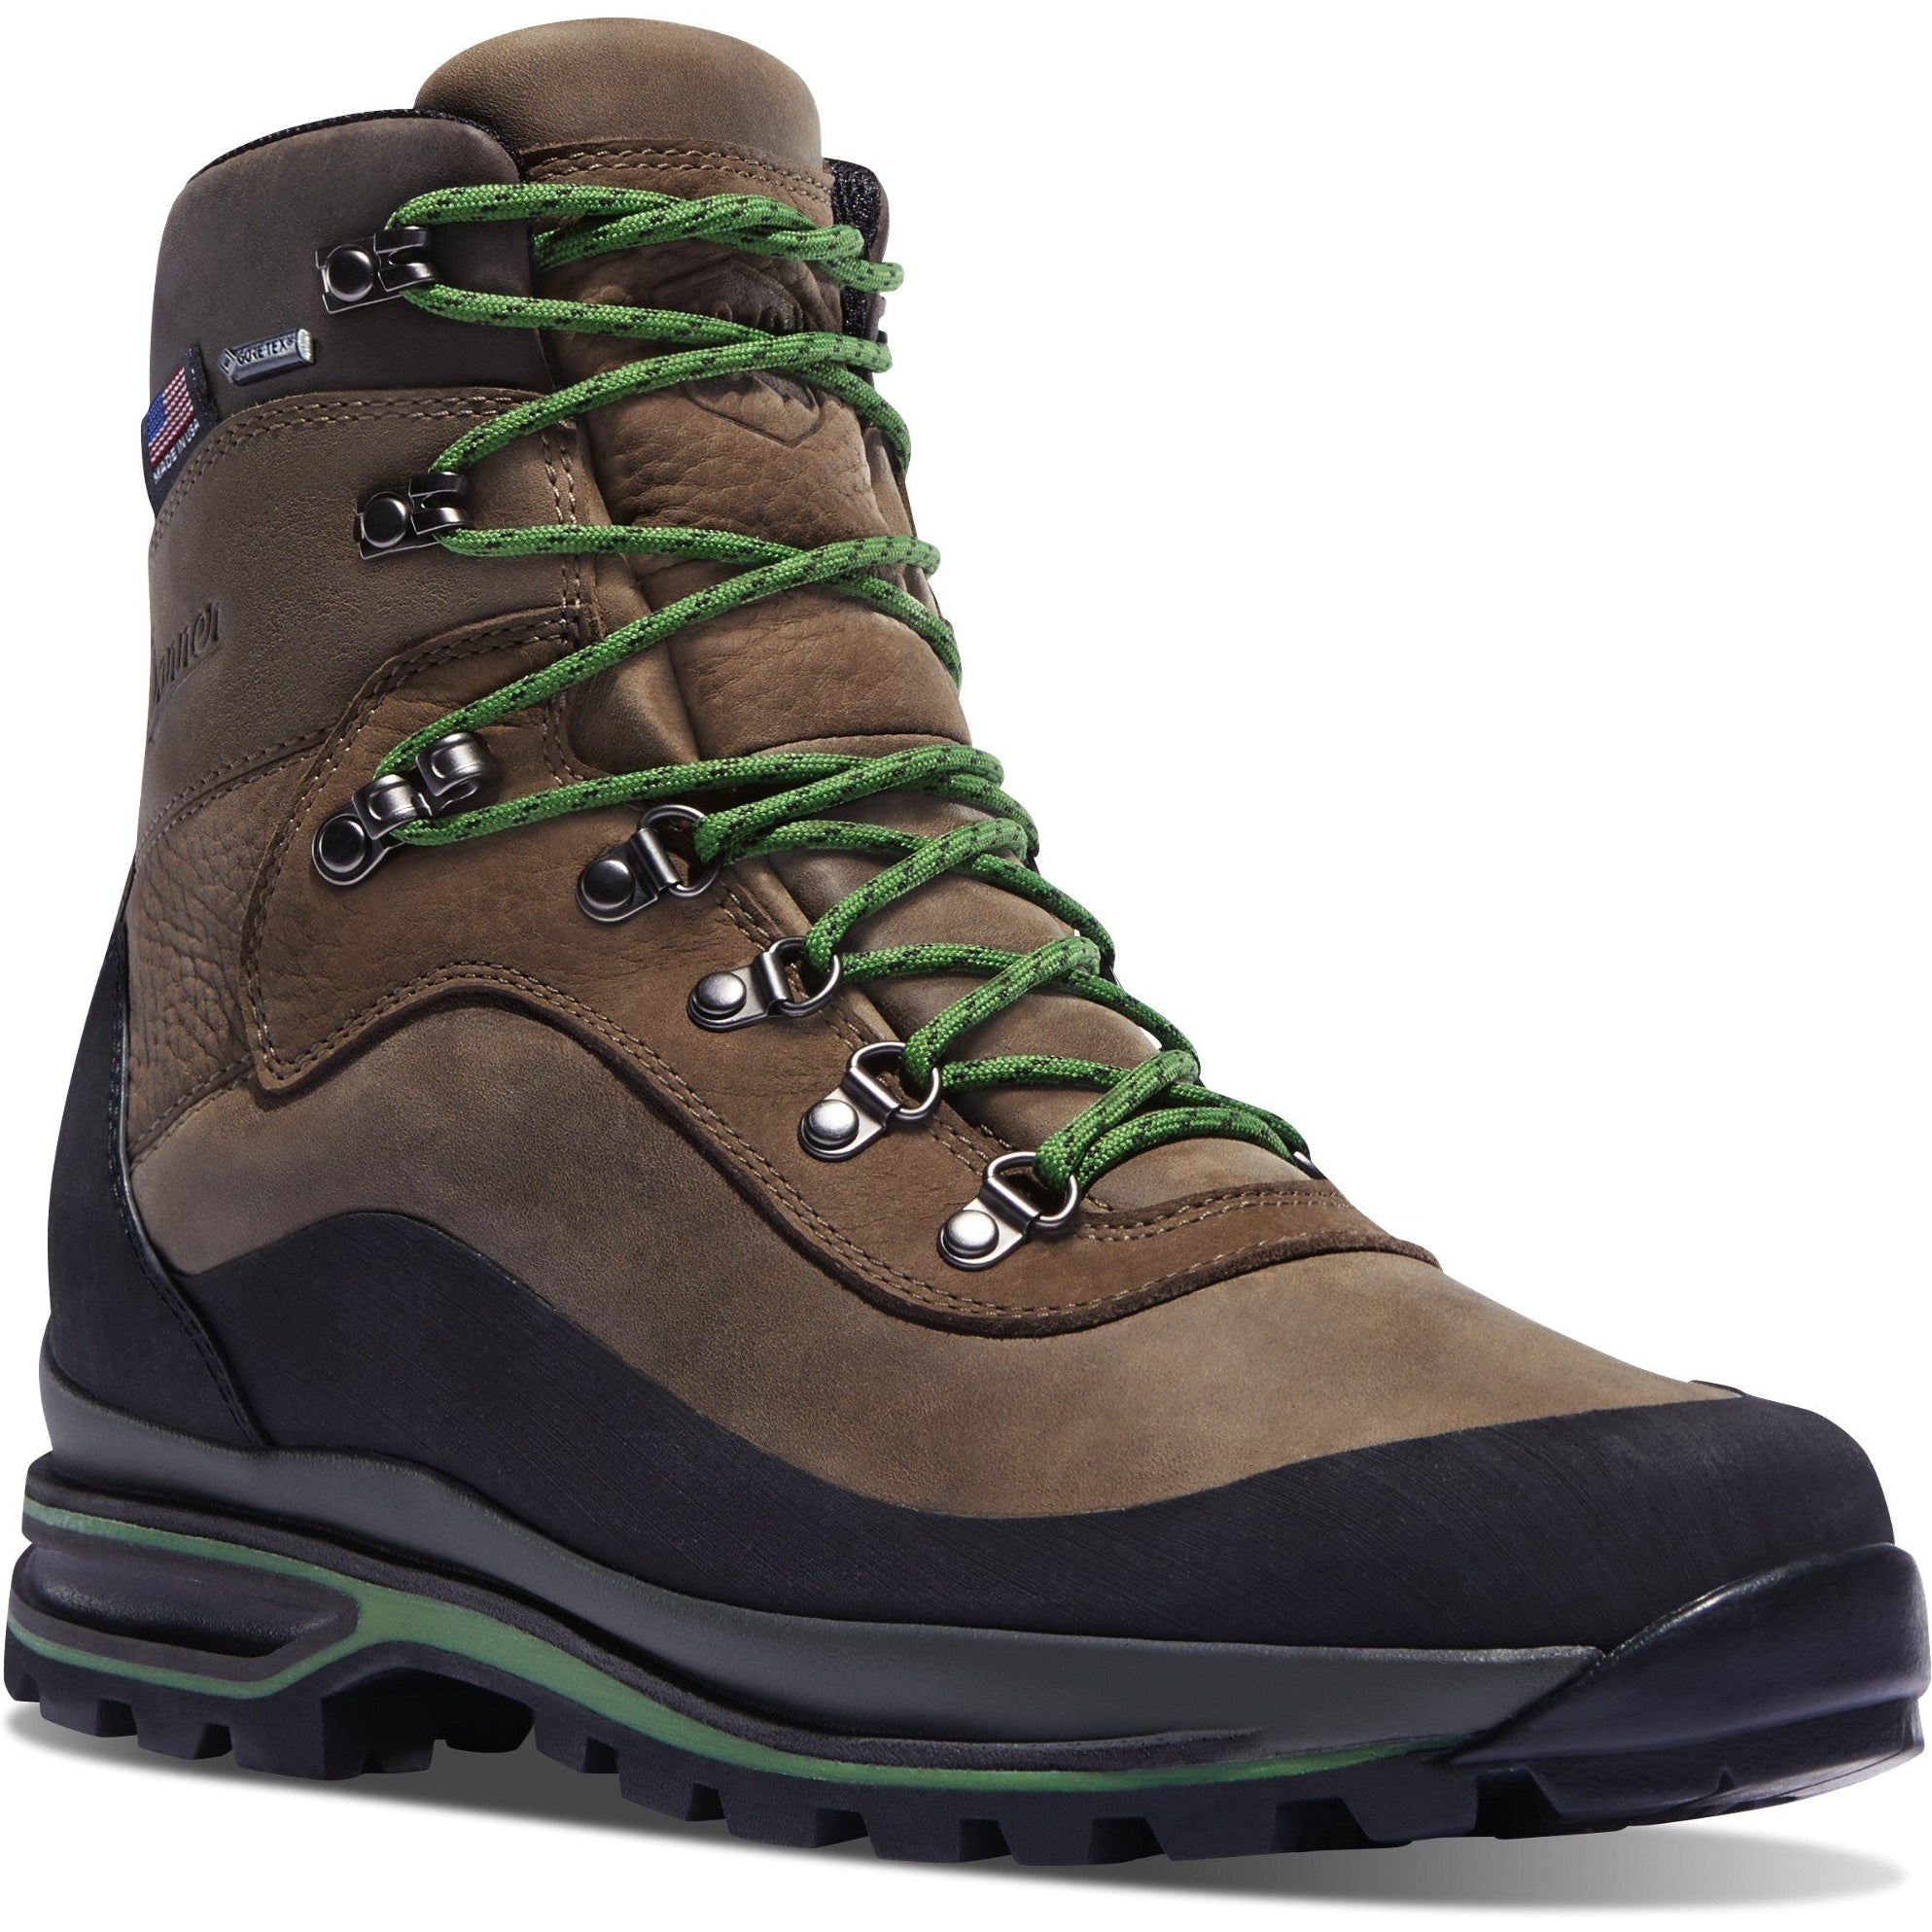 Danner Men's Crag Rat 7" WP Made in USA Hiking Boot - Brown - 67810 7 / Medium / Brown - Overlook Boots